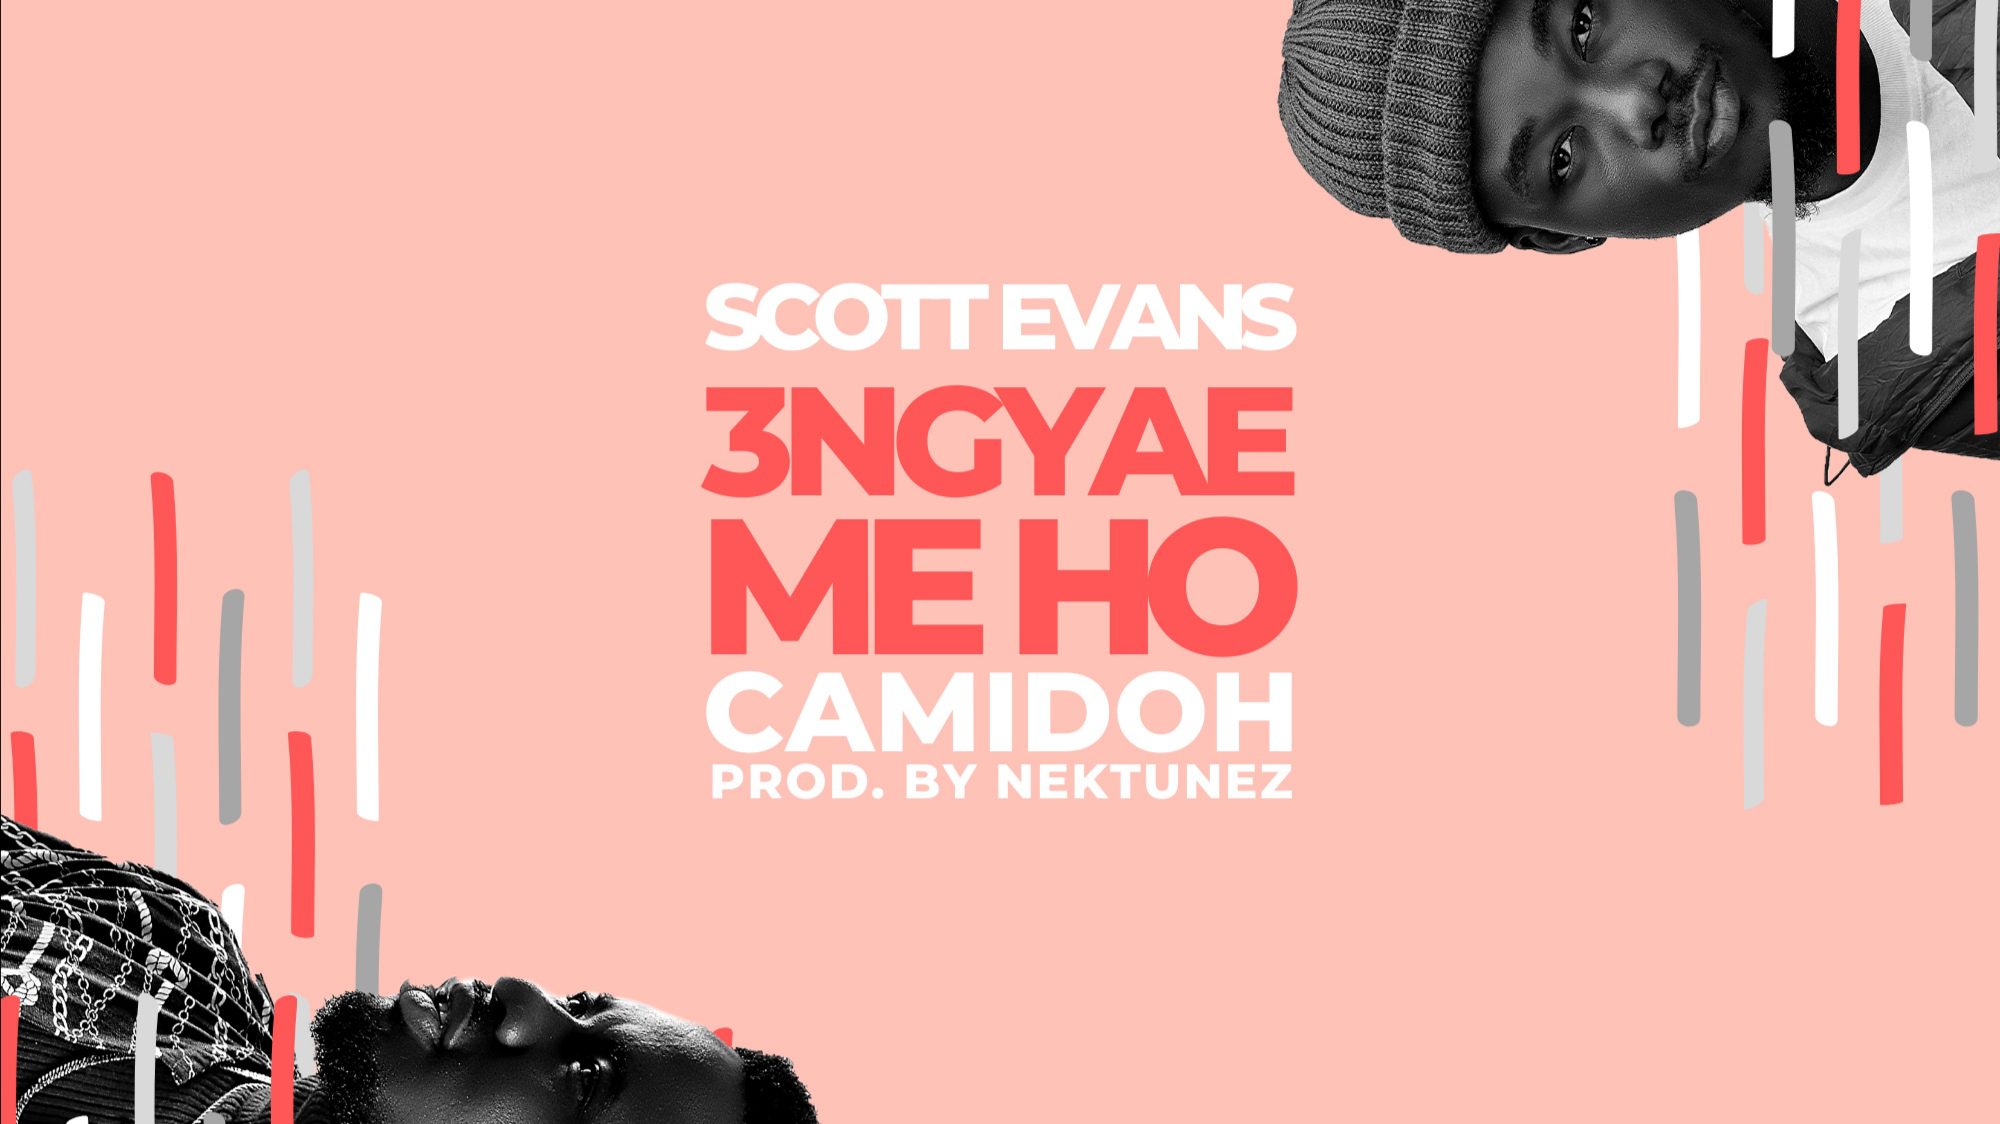 New Music: Scott Evans ft. Camidoh – Engyae Me Ho